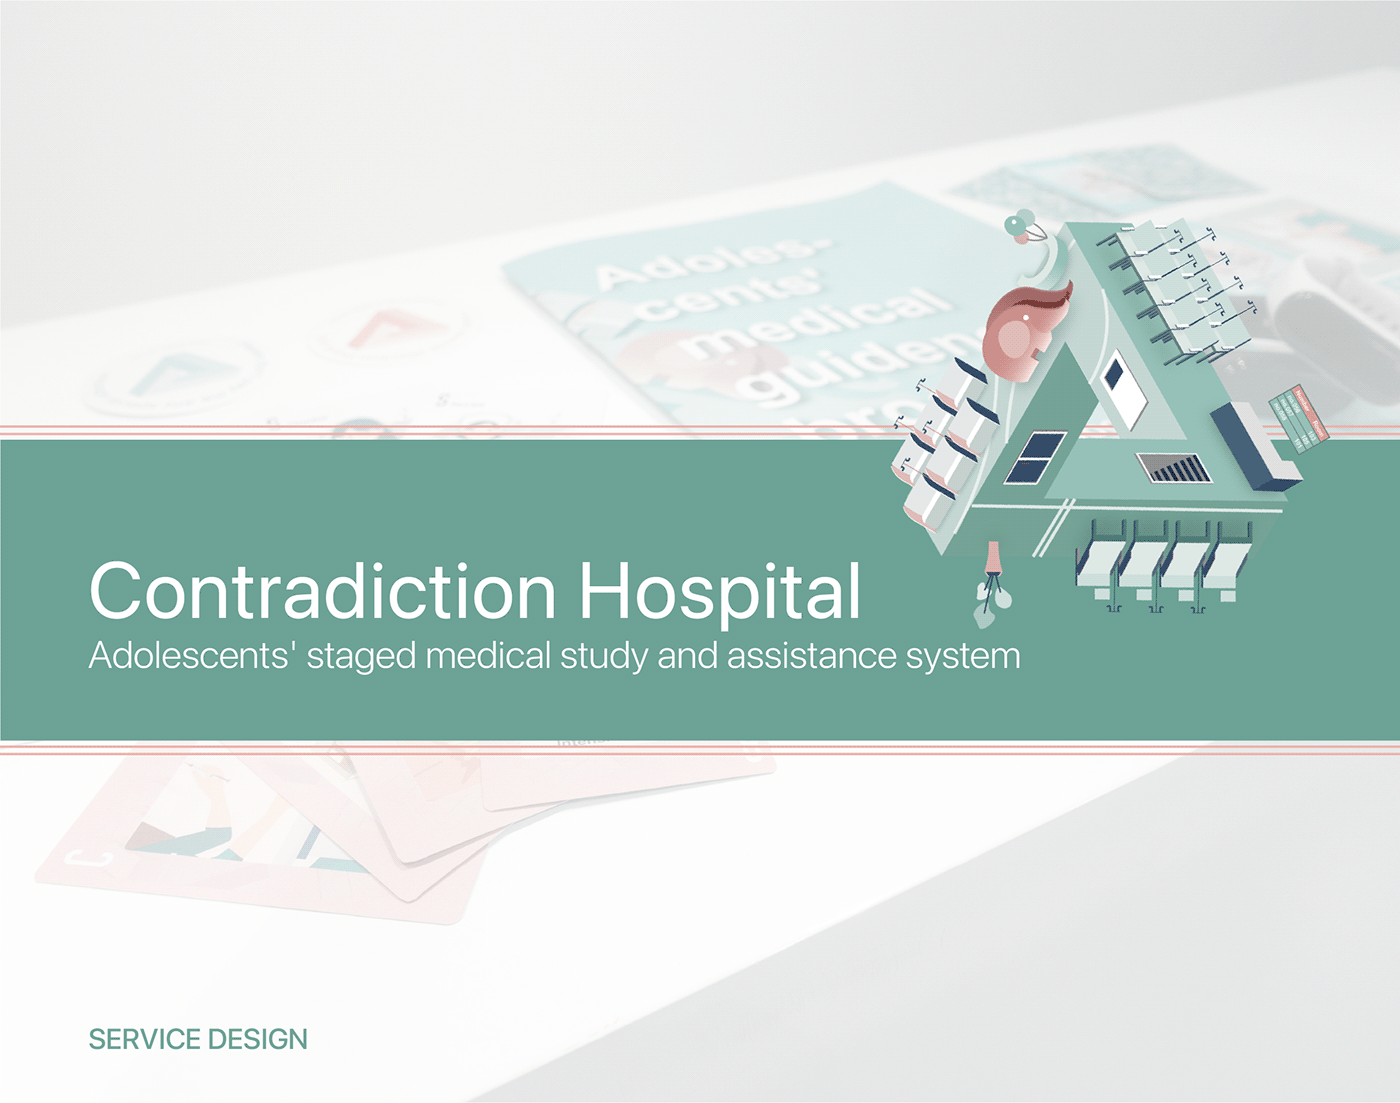 card hospital illustrations Mobile app Service design UI/UX